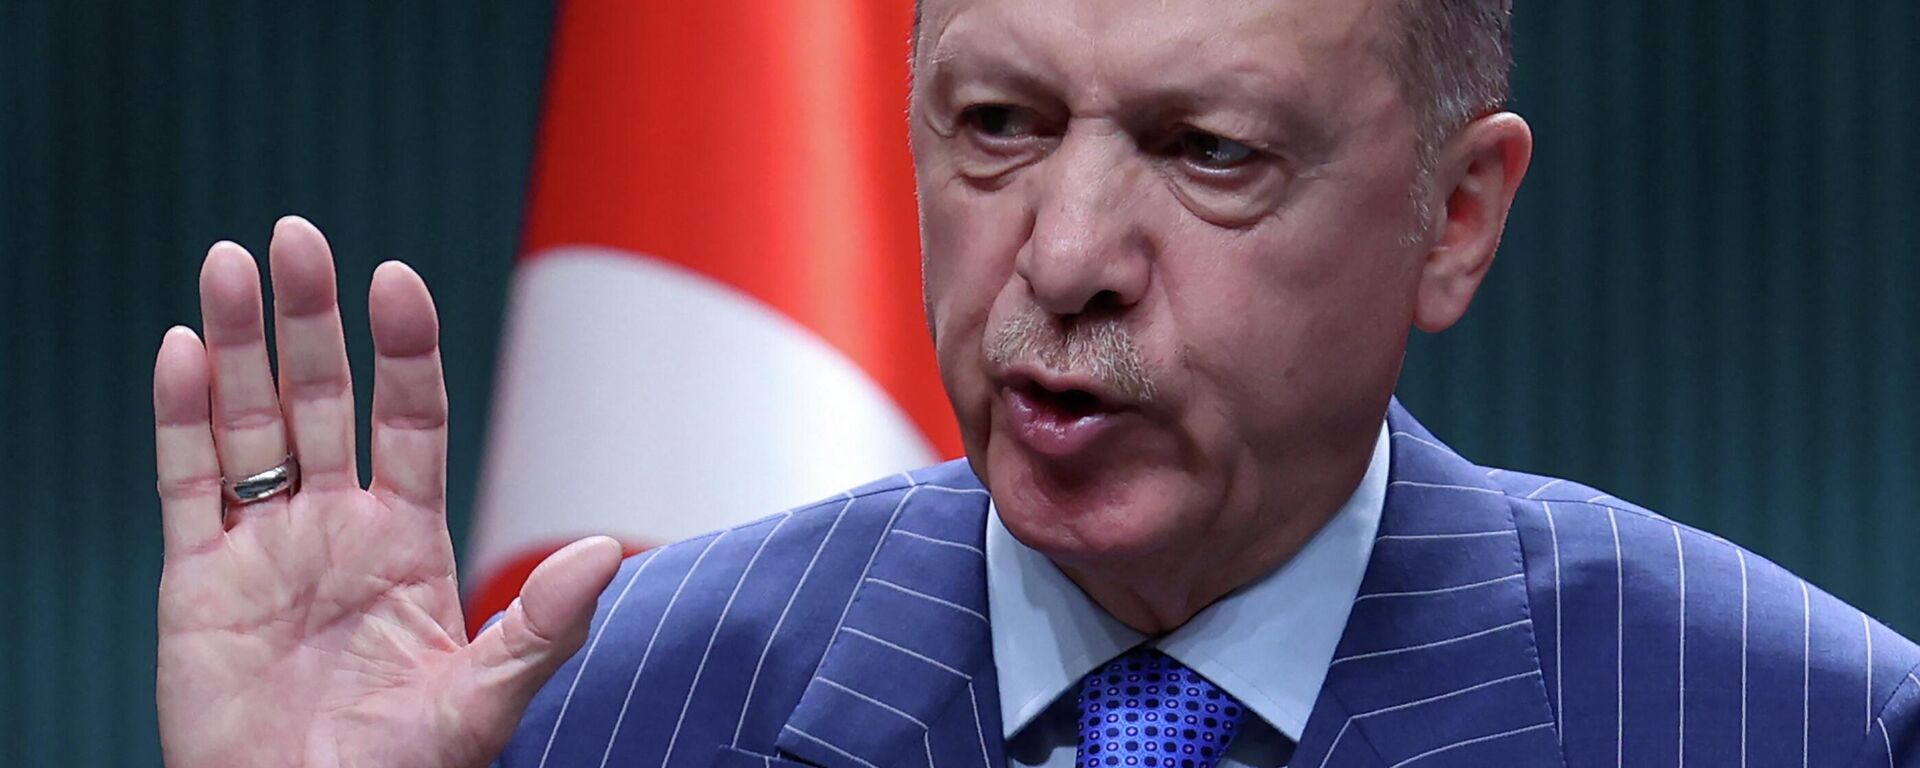 O presidente turco Recep Tayyip Erdogan fala durante uma coletiva de imprensa após uma reunião de gabinete no Complexo Presidencial em Ancara em 9 de maio de 2022 - Sputnik Brasil, 1920, 16.05.2022